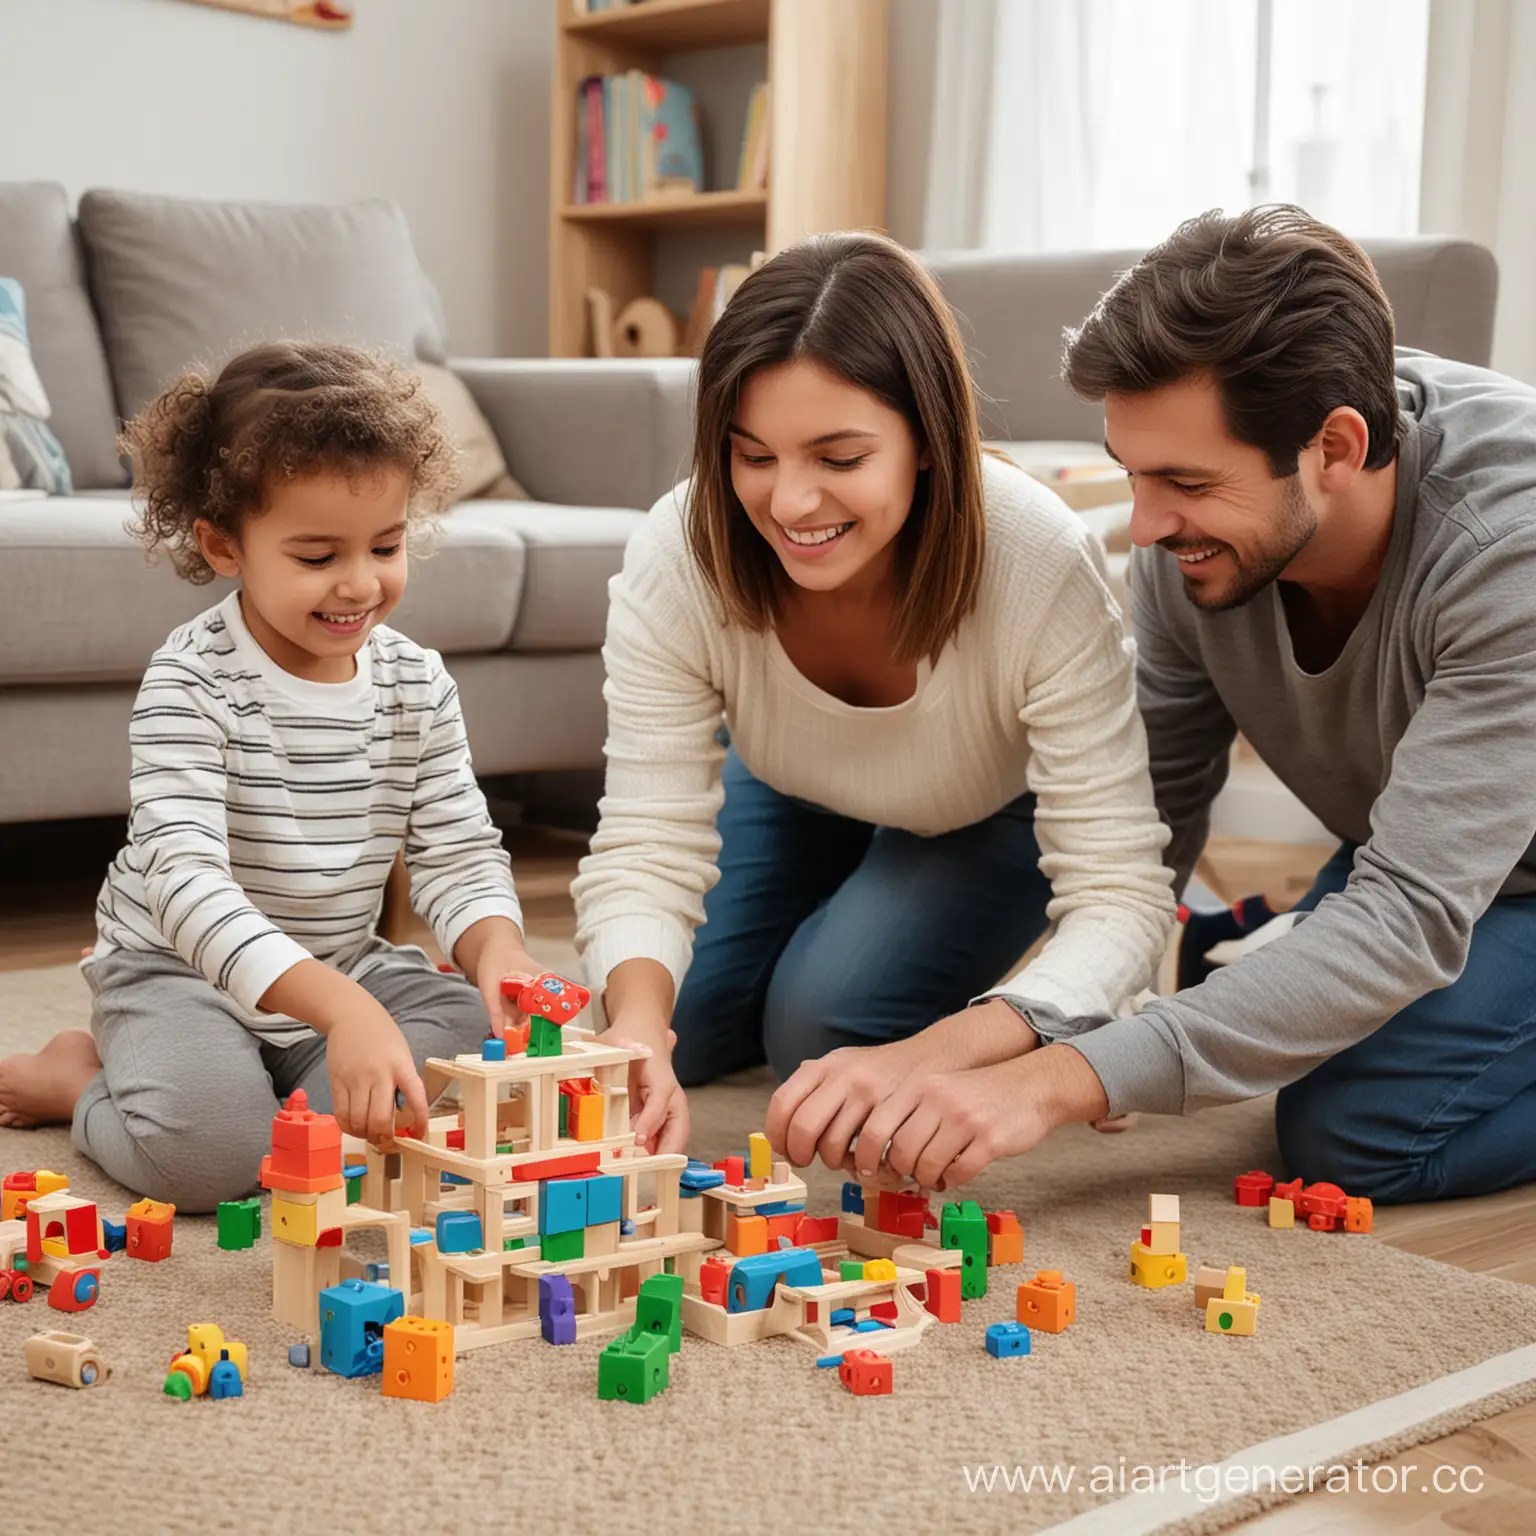 ребенок 5-6 лет играет в развивающие игрушки с мамой и папой